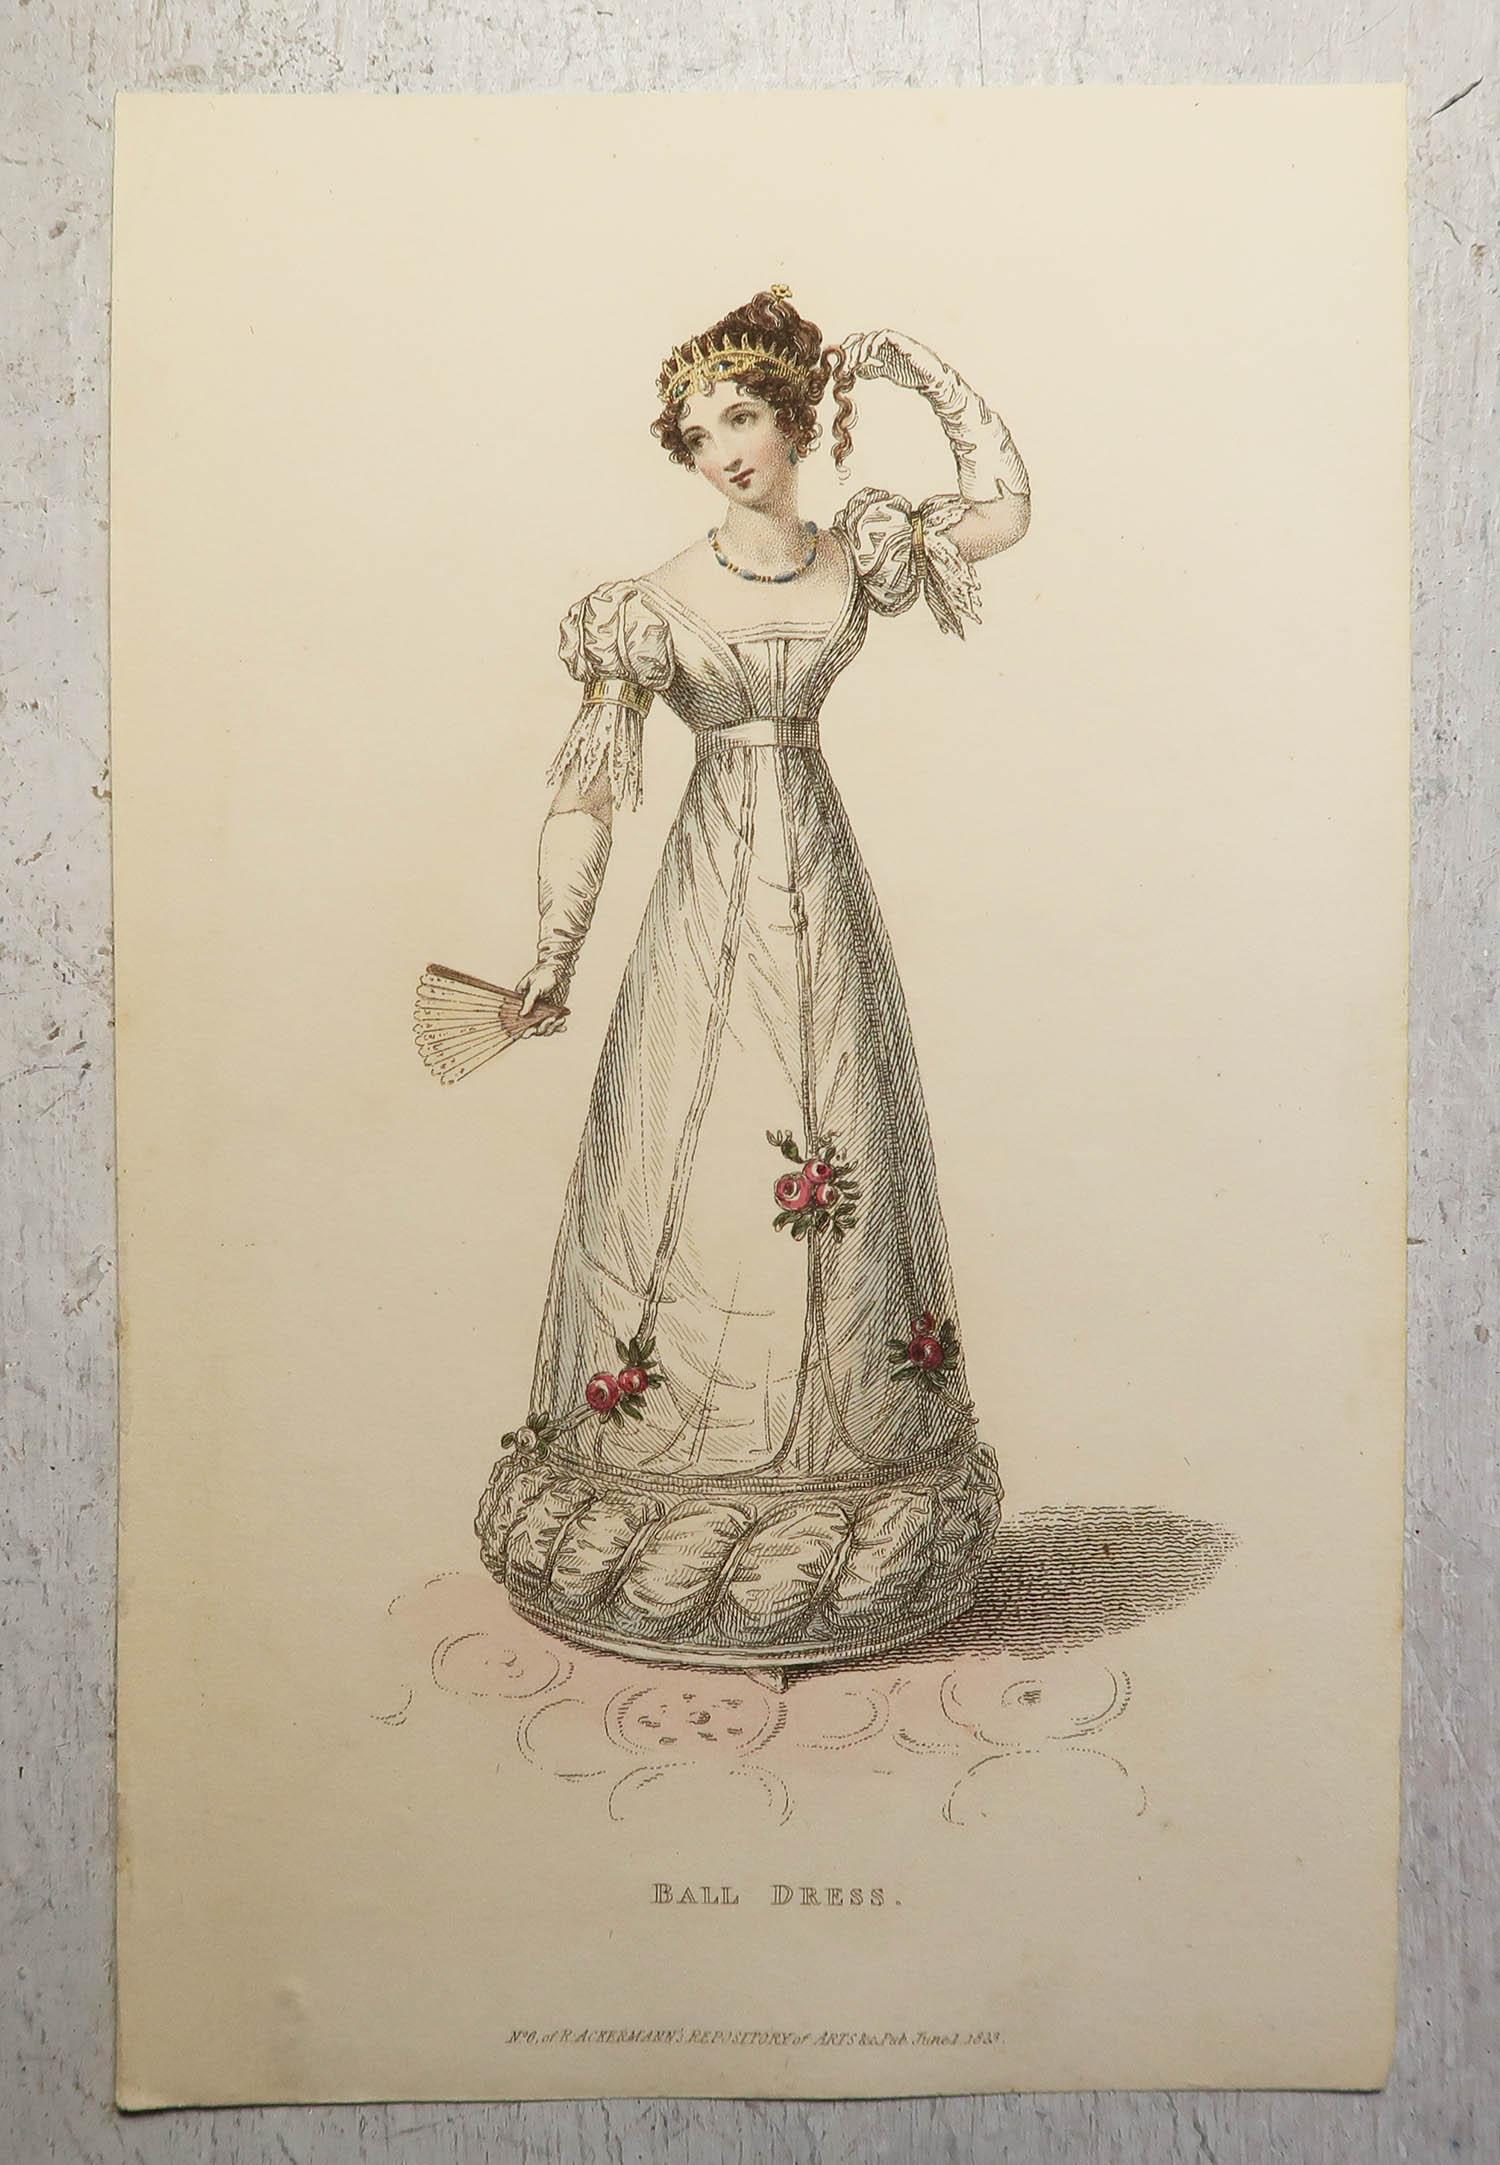 Ensemble de 18 imprimés de mode

Jolies couleurs pastel

Lithographies avec couleurs originales à la main

Publié par Ackermann, Londres

La plupart sont datés de 1809. Quelques 1823

Non encadré.

La mesure indiquée est le format papier d'une